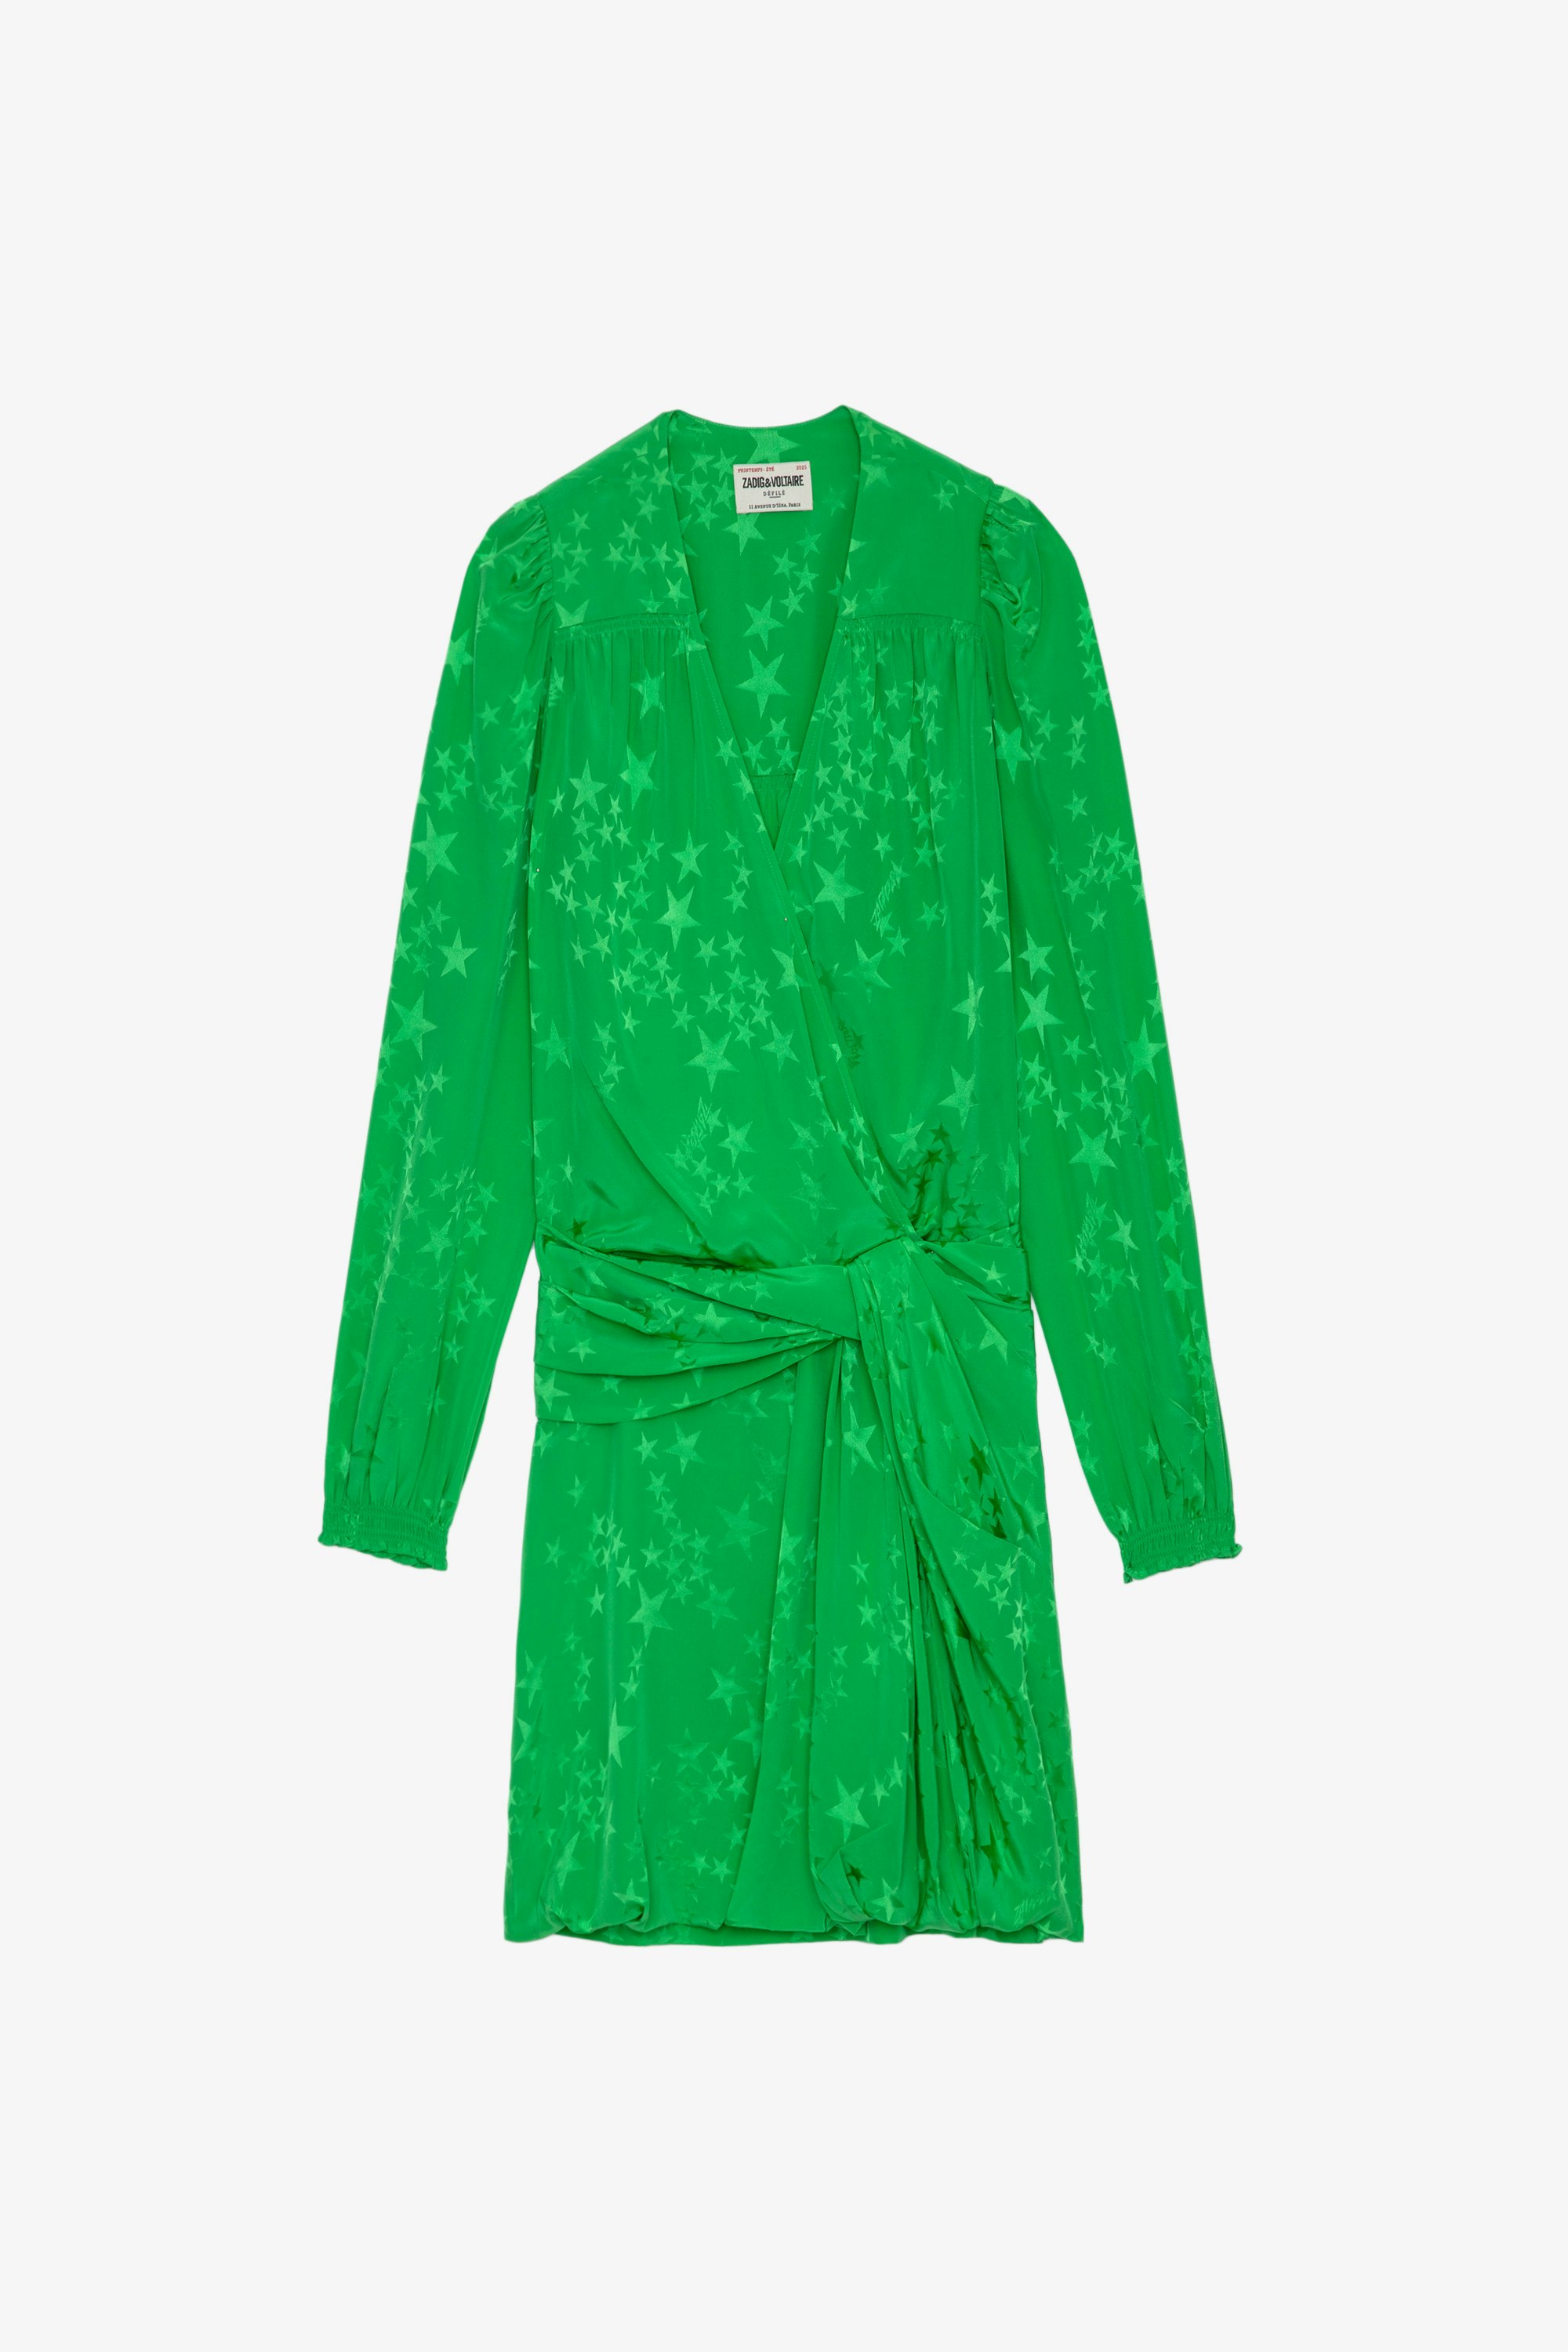 Robe Recol Jac Soie Robe courte en soie vert pomme jacquard effet drapé, ornée d'étoiles et nouée à la taille Femme